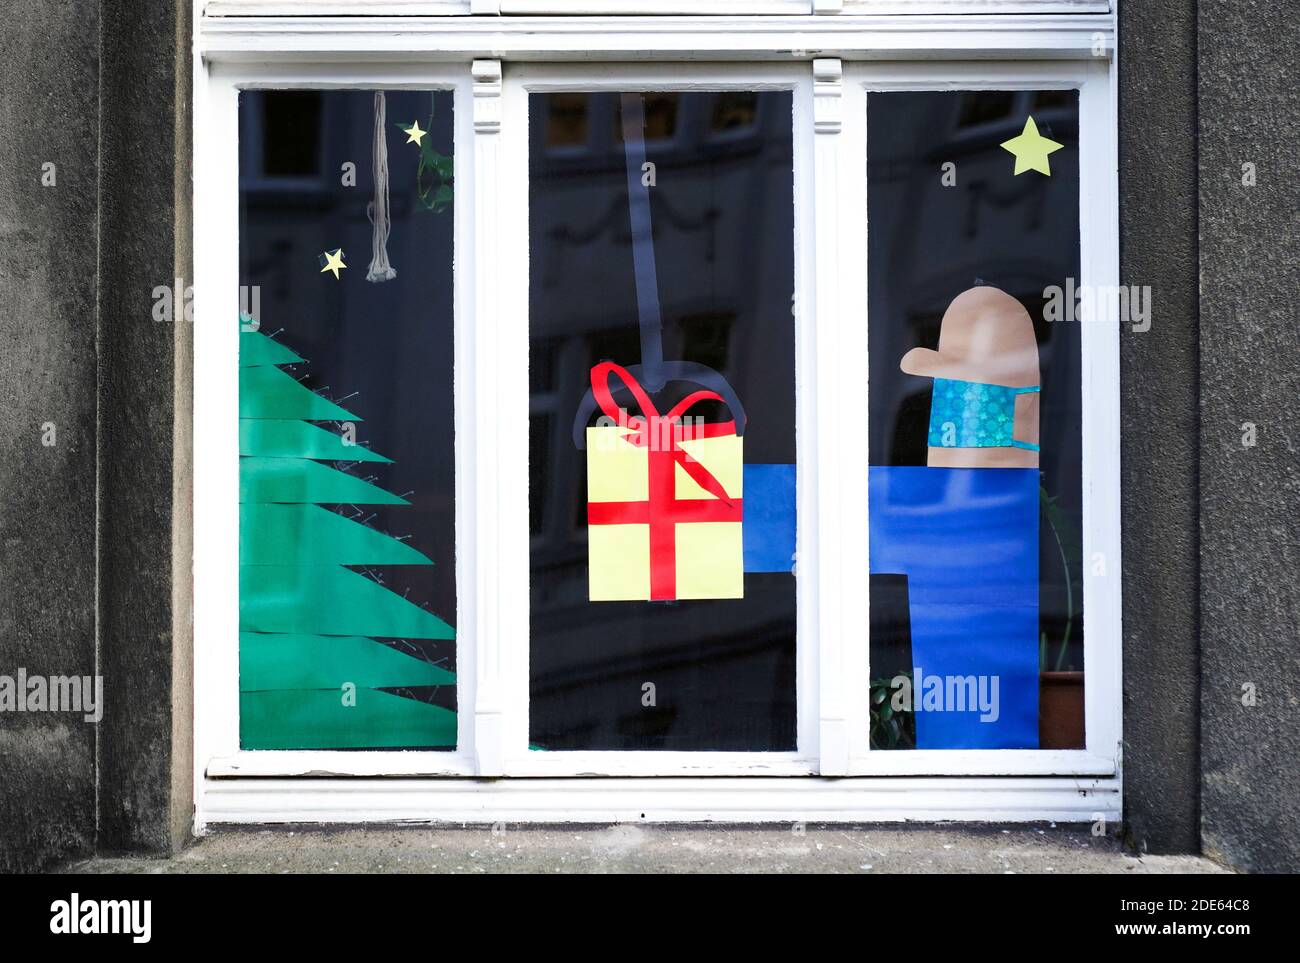 Dortmund, 29. November 2020: Wohnungsfenster zu Weihnachten dekoriert bezieht sich auf den Heiligabend in der Corona-Zeit. Der Mann, der das Geschenk gibt, trägt Mund- und Nasenschutz gegen das Virus. Stockfoto